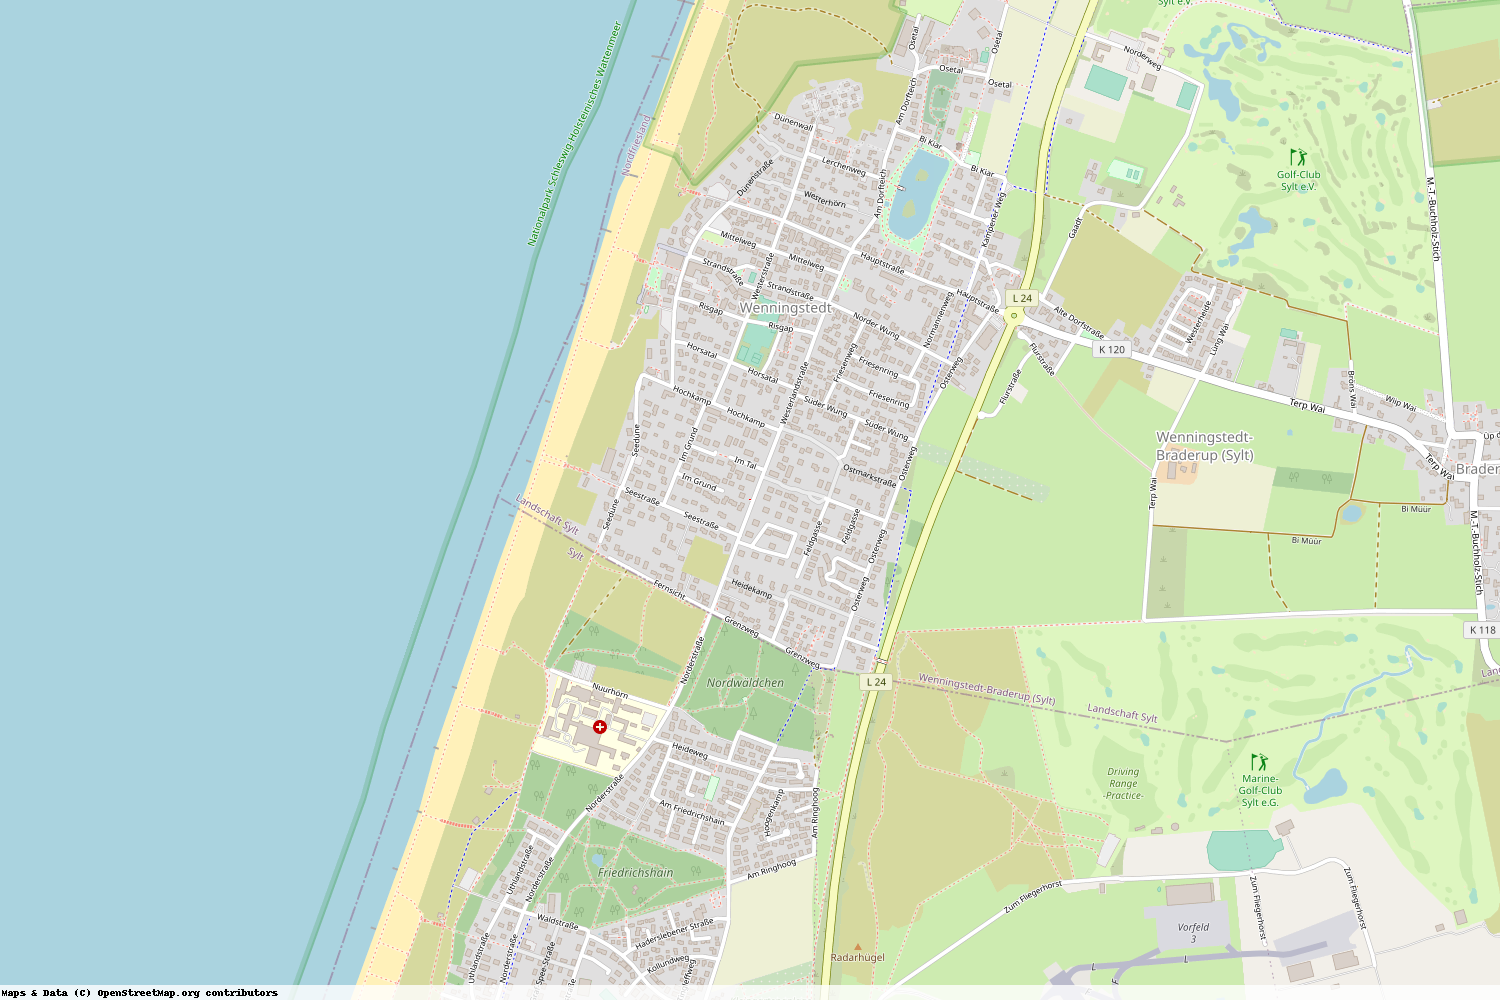 Ist gerade Stromausfall in Schleswig-Holstein - Nordfriesland - Wenningstedt-Braderup (Sylt)?